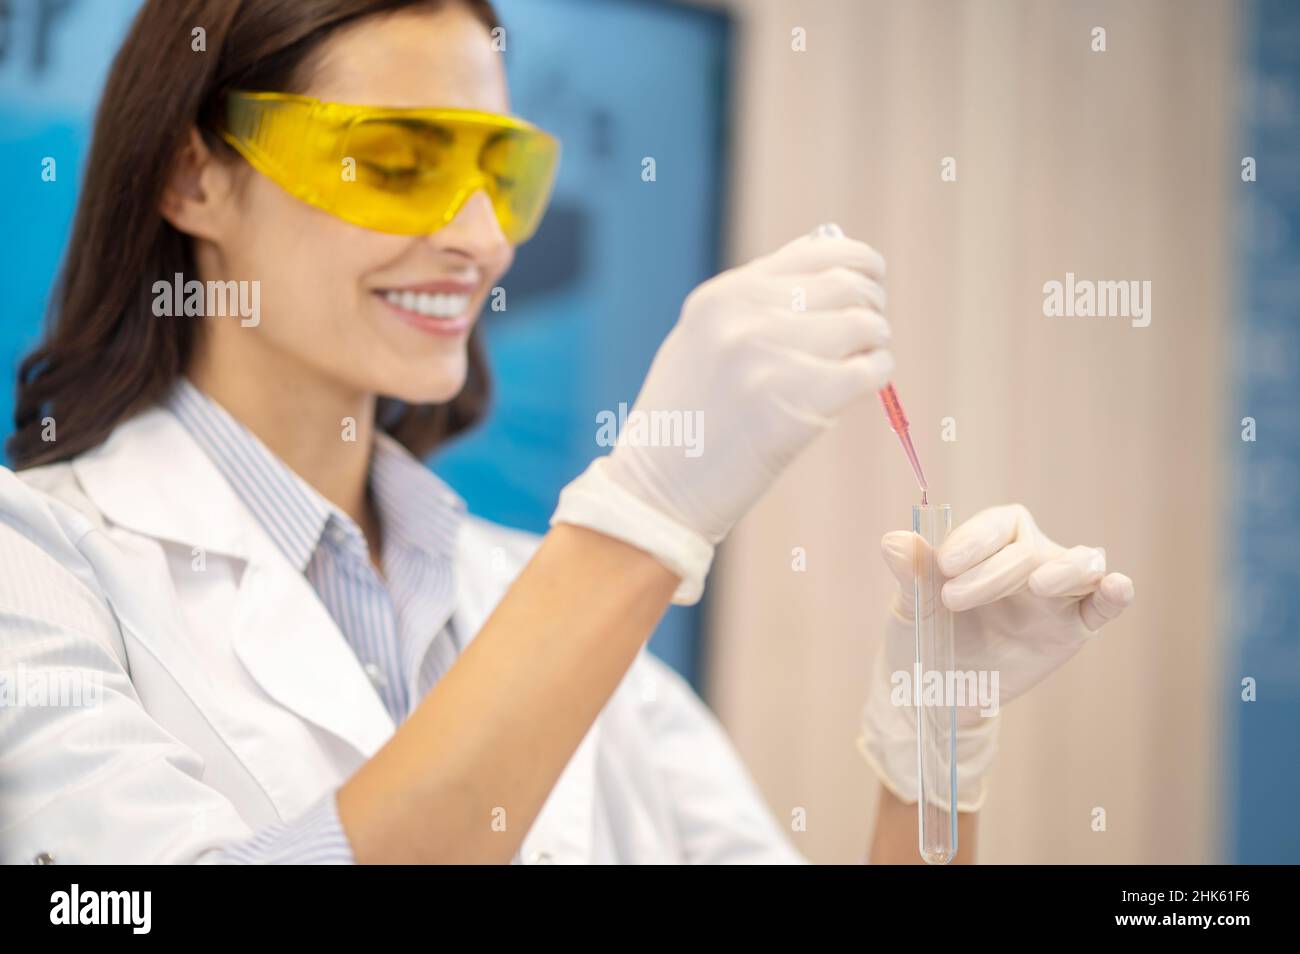 Femme faisant une expérience de chimie avec un tube à essai Banque D'Images